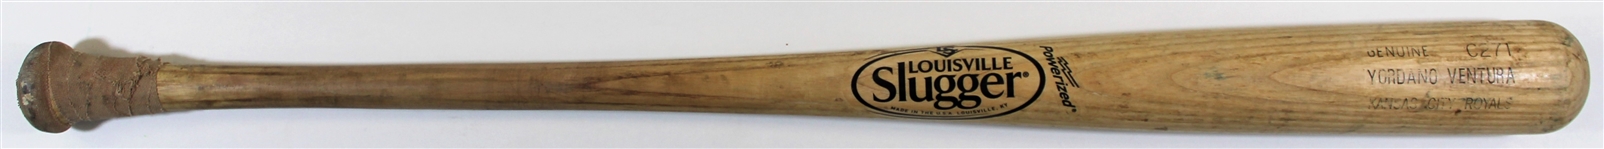 2014-15 Yordano Ventura Game Used Royals Bat